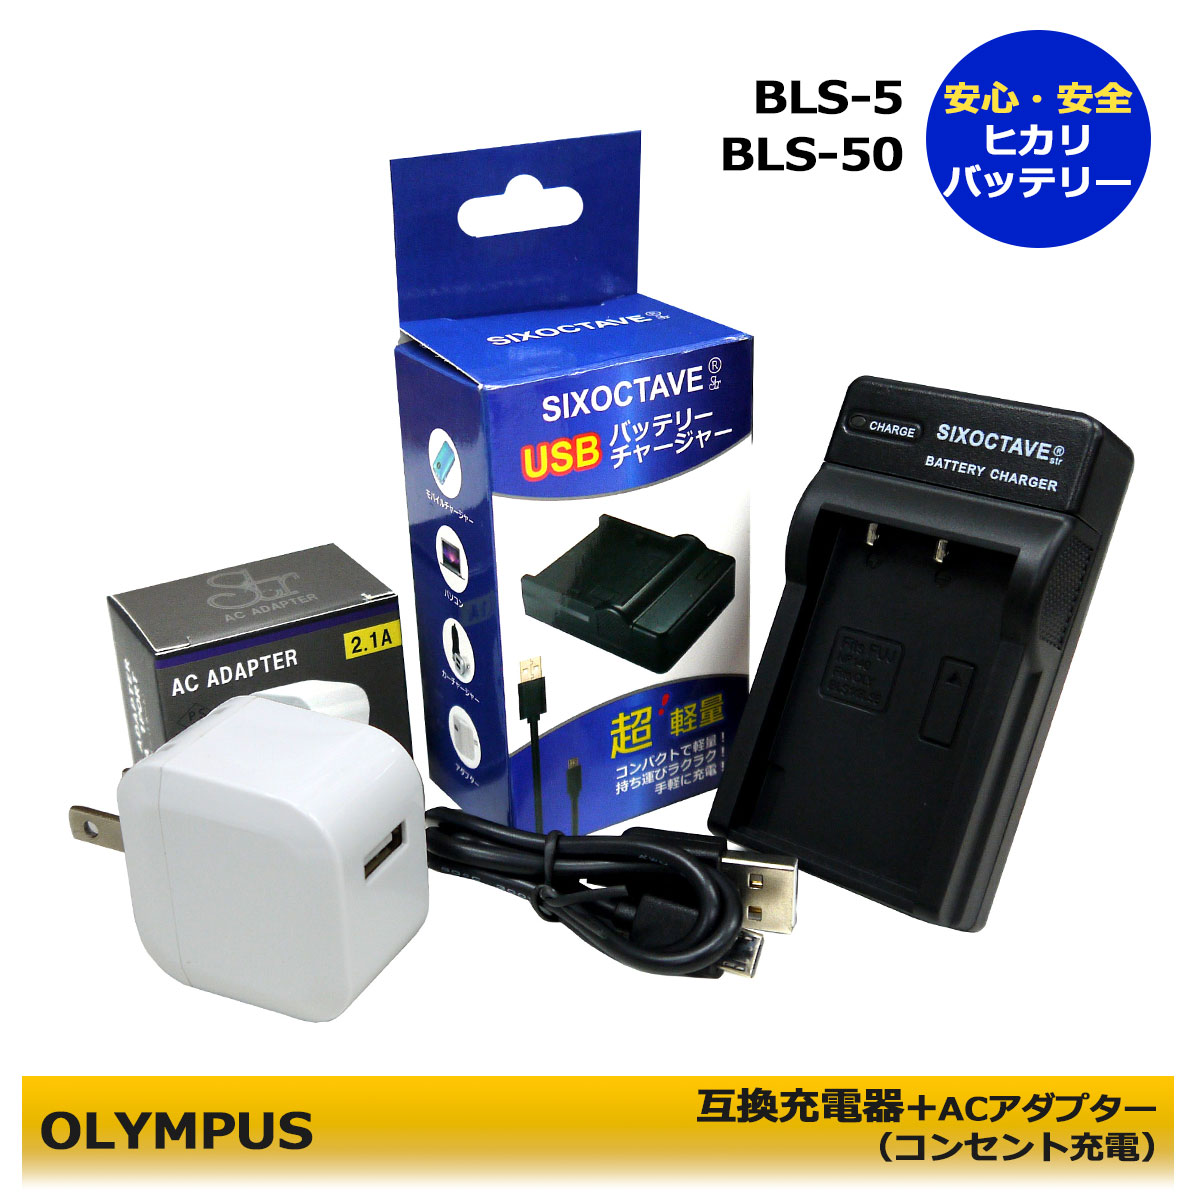 ★コンセント充電可能★　BLS-5 / BLS-